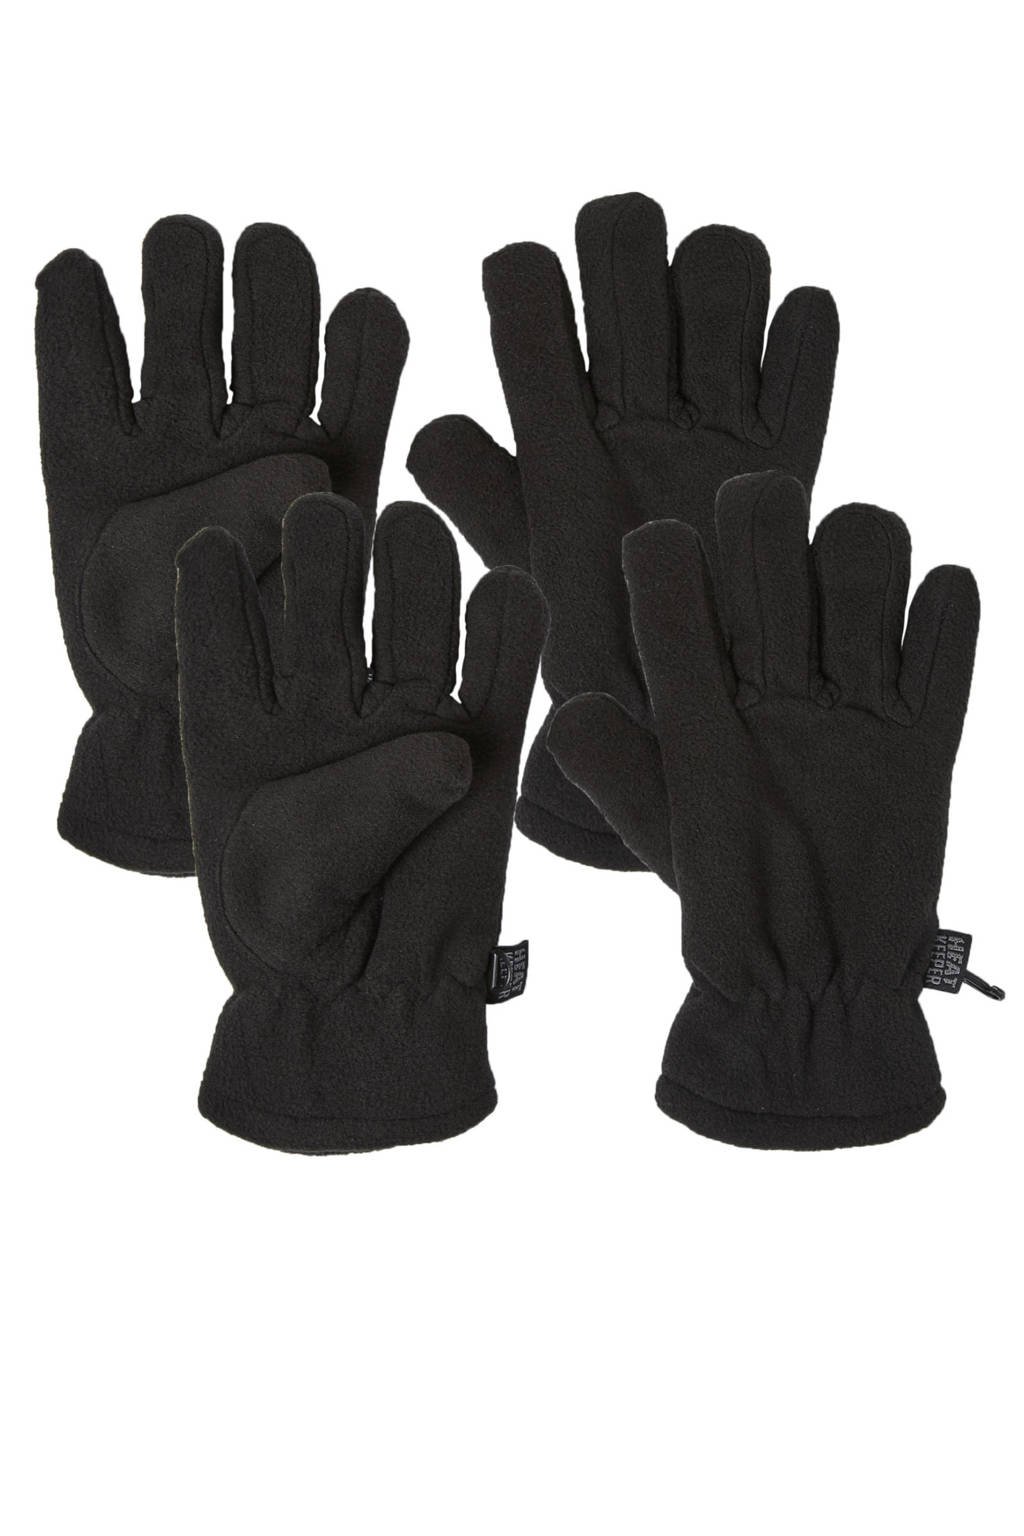 Heatkeeper thermo handschoenen - set van 2 zwart, Zwart